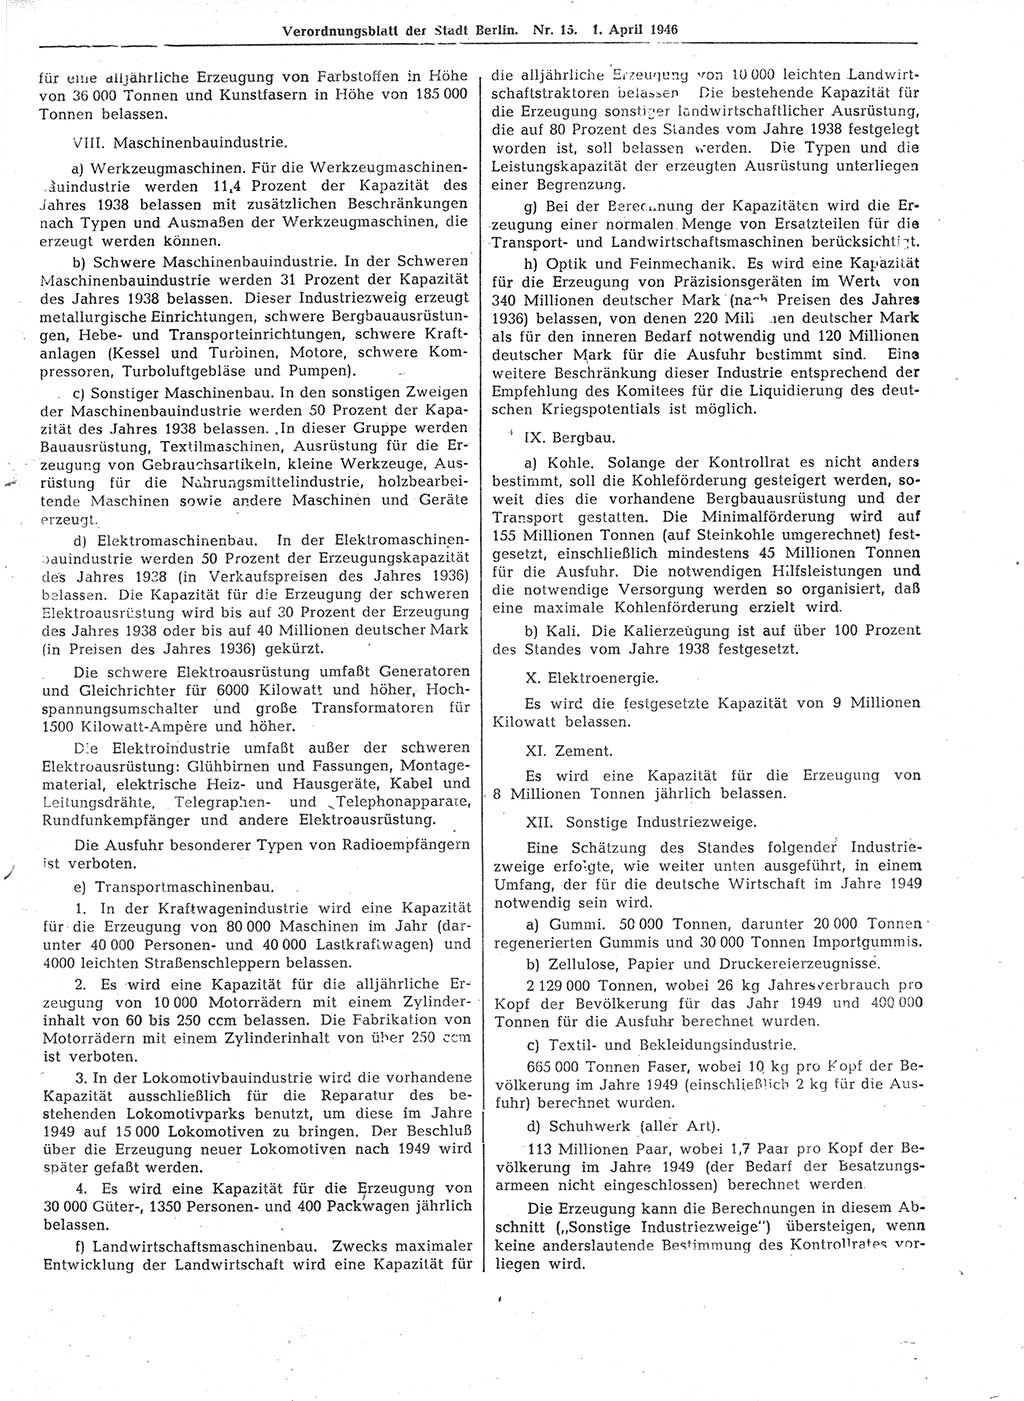 Verordnungsblatt (VOBl.) der Stadt Berlin, für Groß-Berlin 1946, Seite 113 (VOBl. Bln. 1946, S. 113)